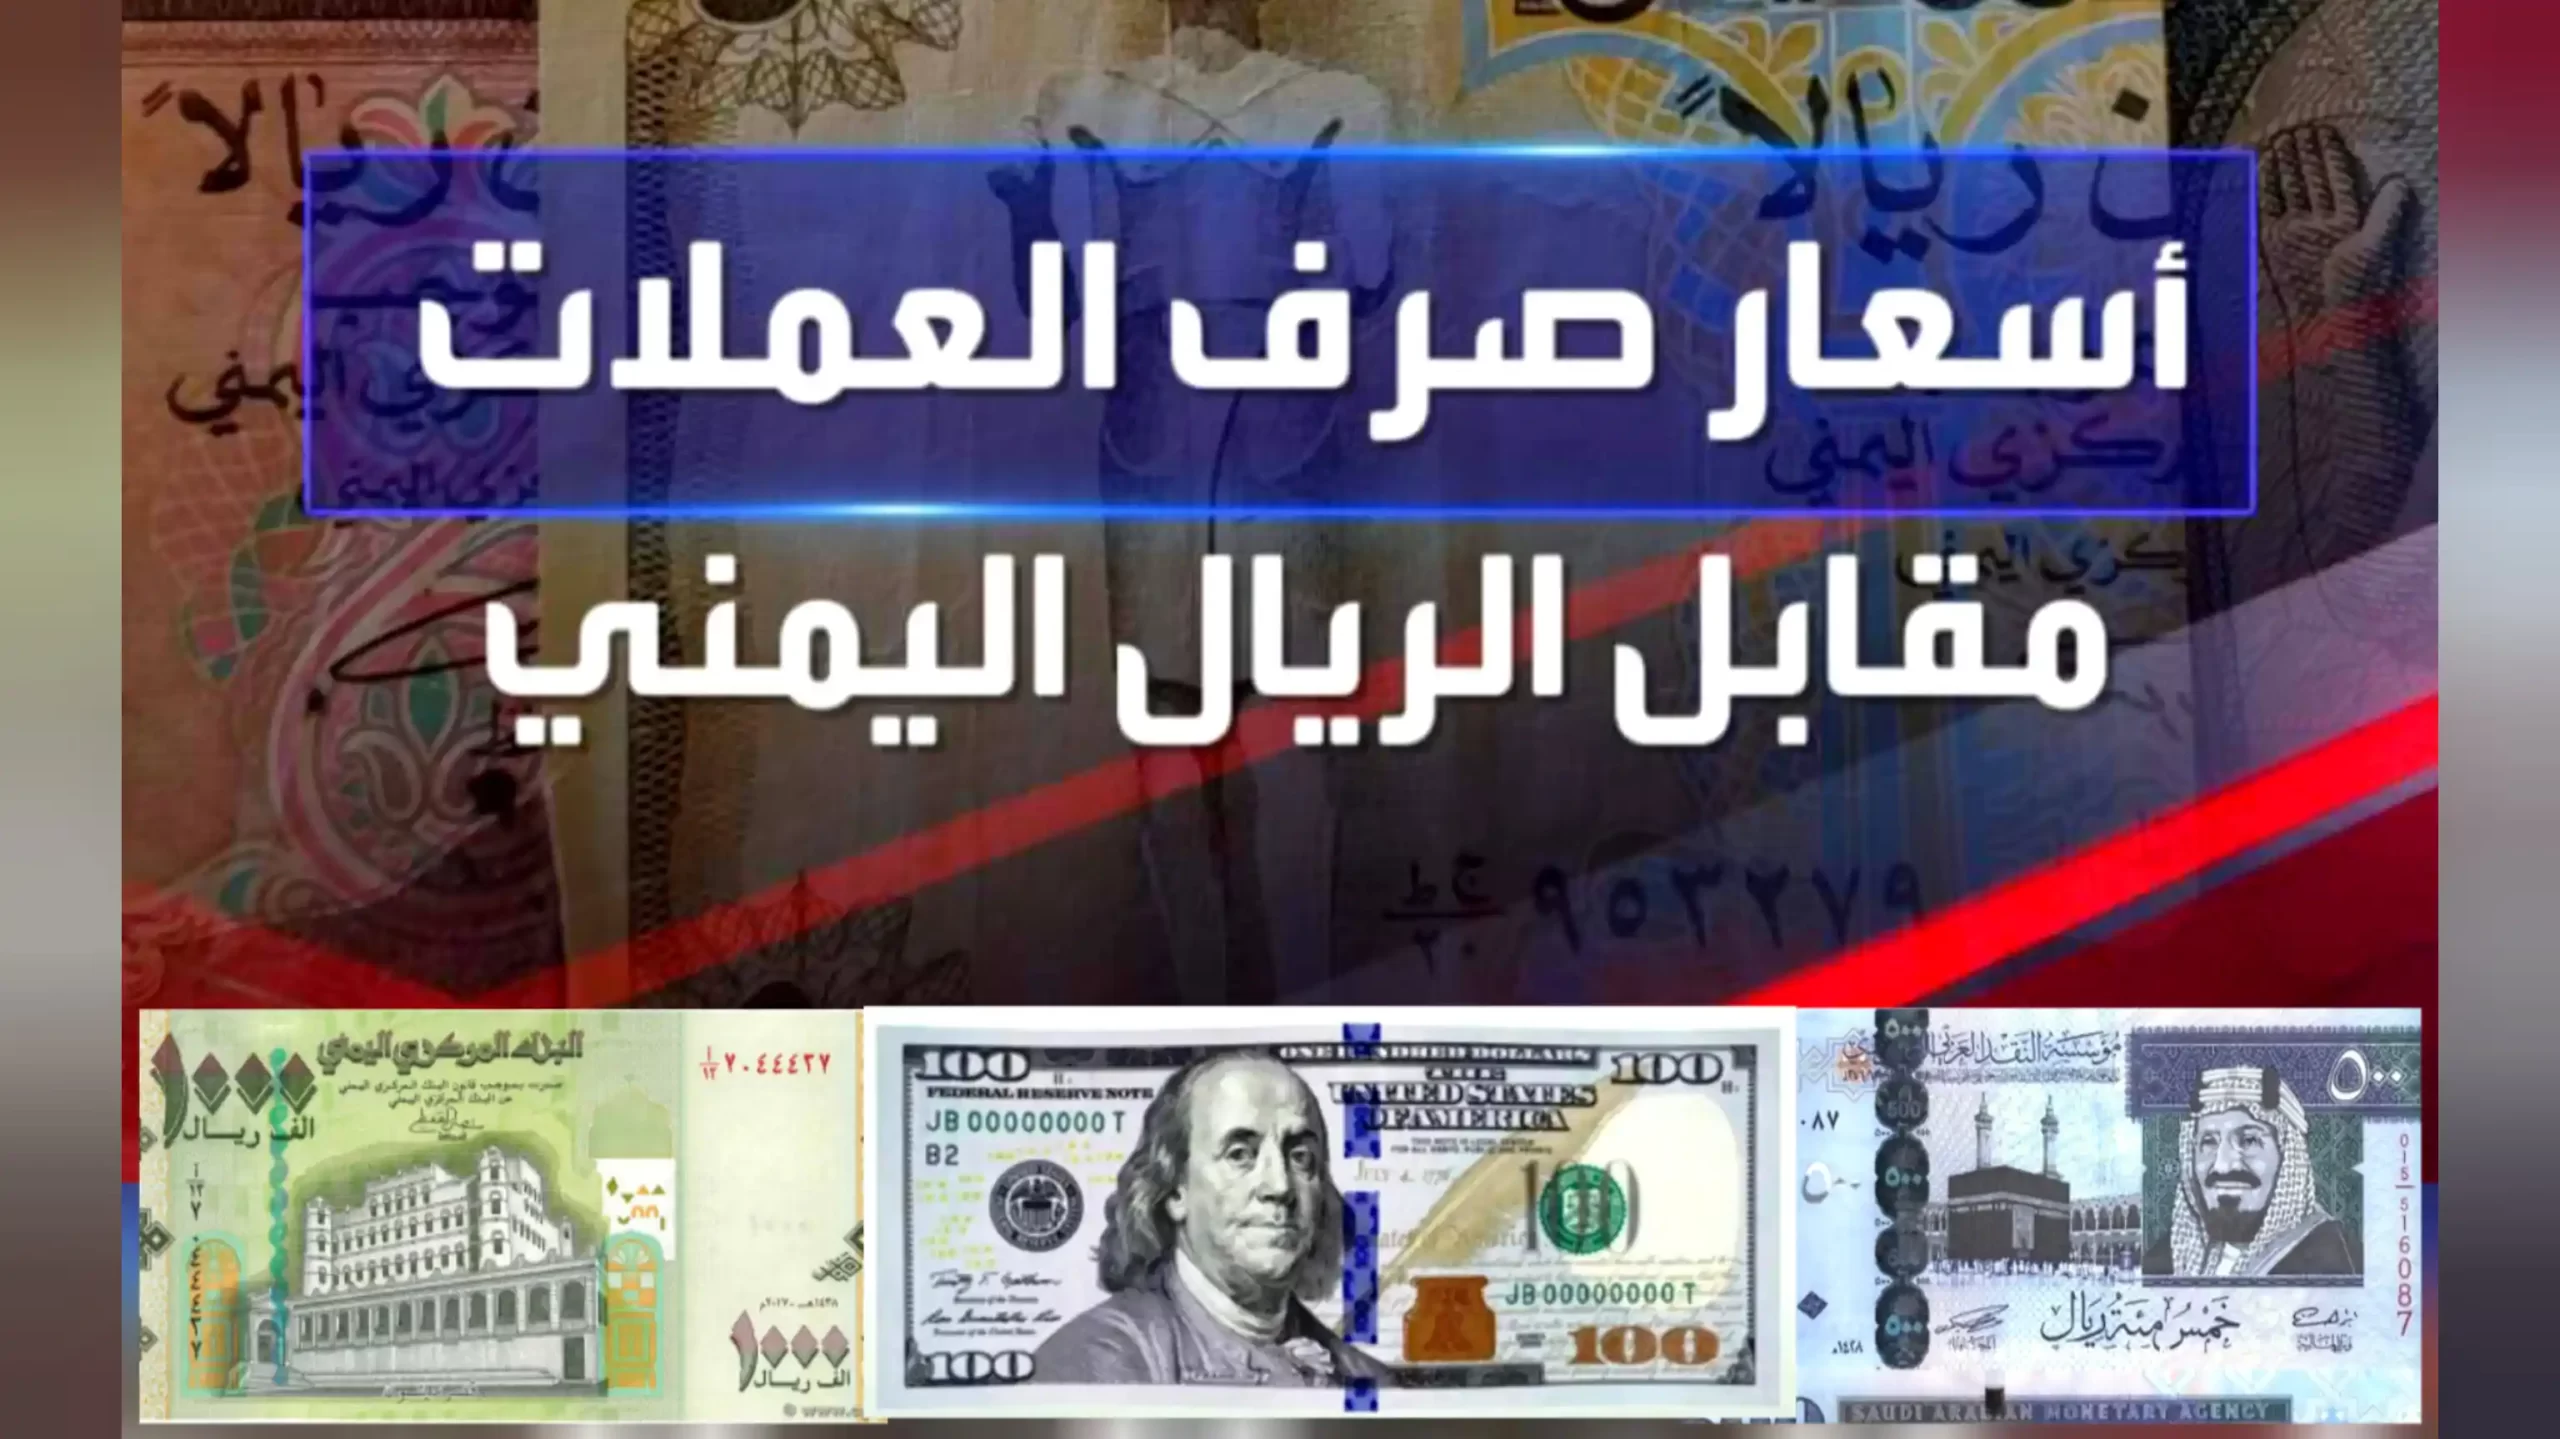 تحديث لأسعار صرف العملات الأجنبية في عدن وصنعاء وحضرموت اليوم الجمعة 26 مايو